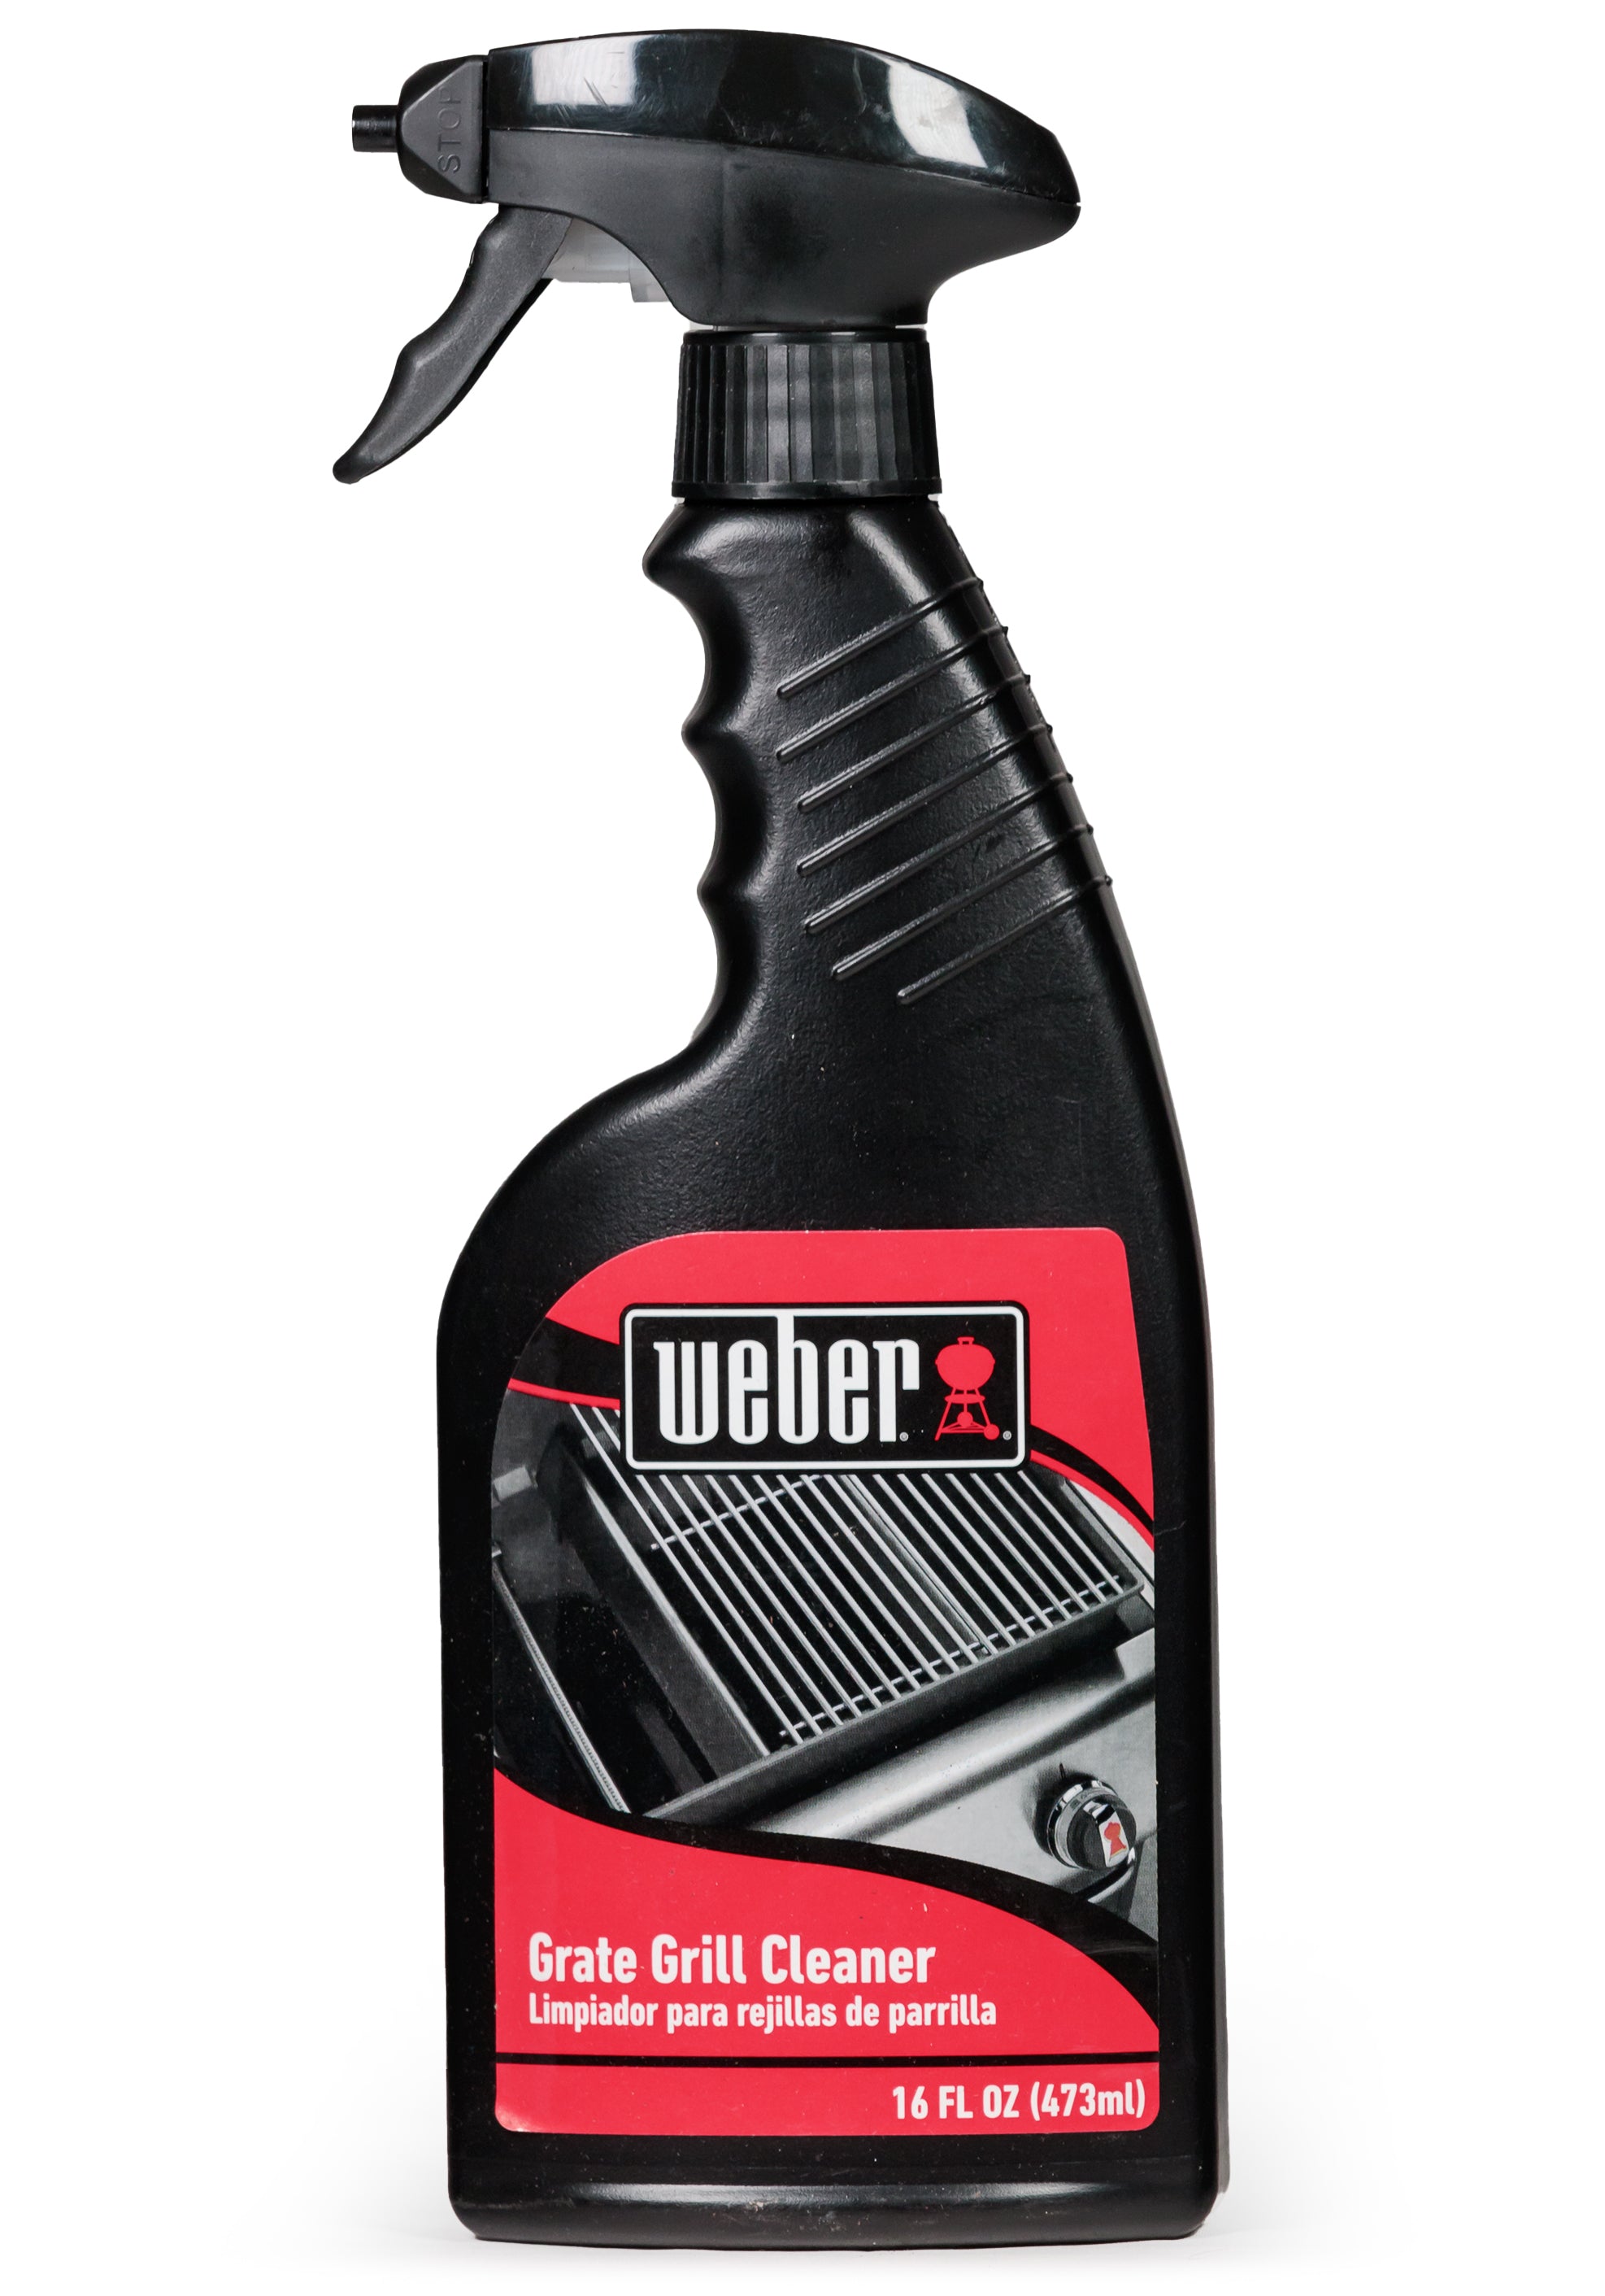 Weber Grate Grill Cleaner - 16 fl oz